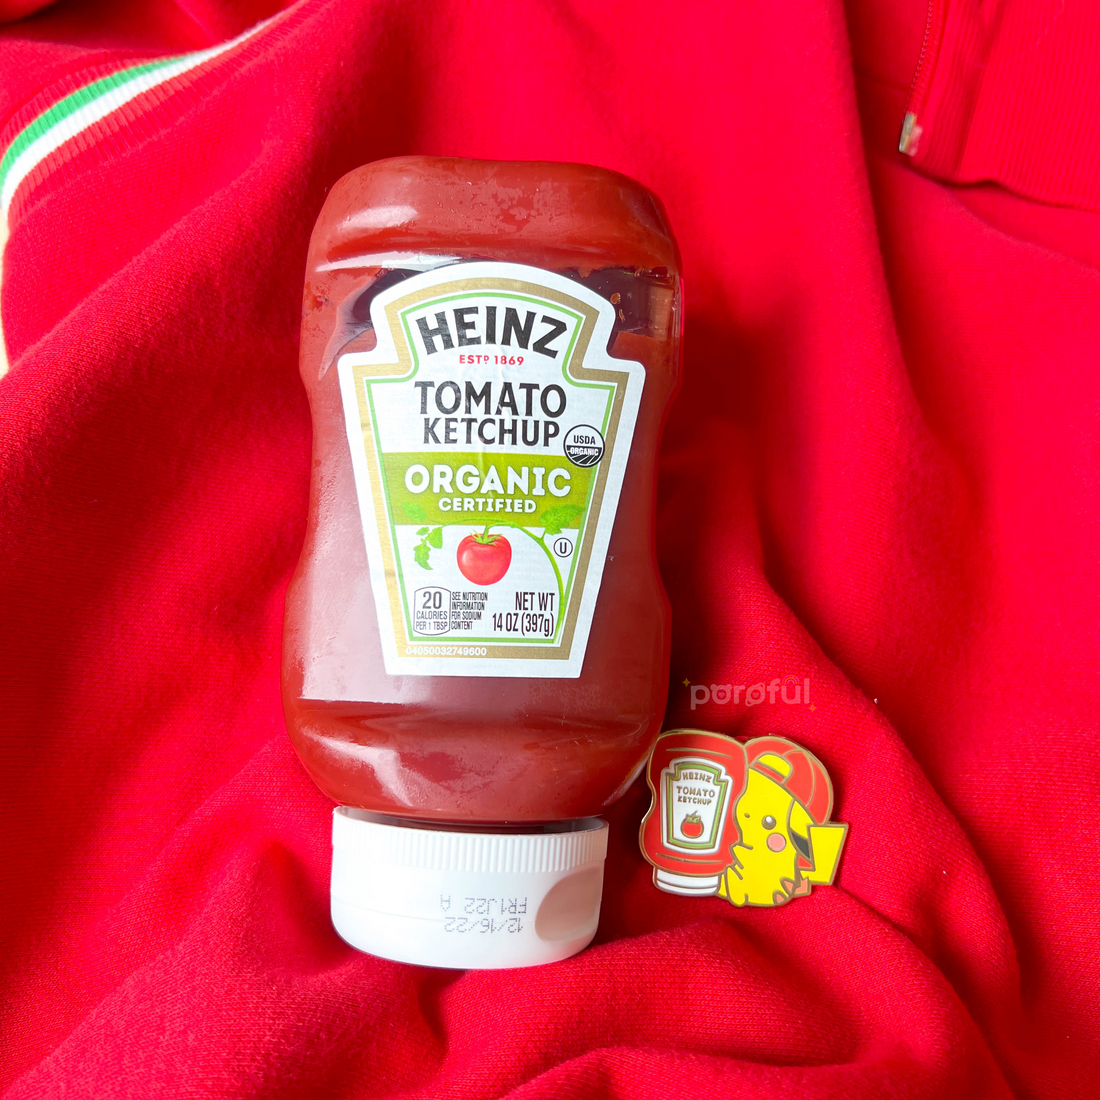 Ketchup Enamel Pin